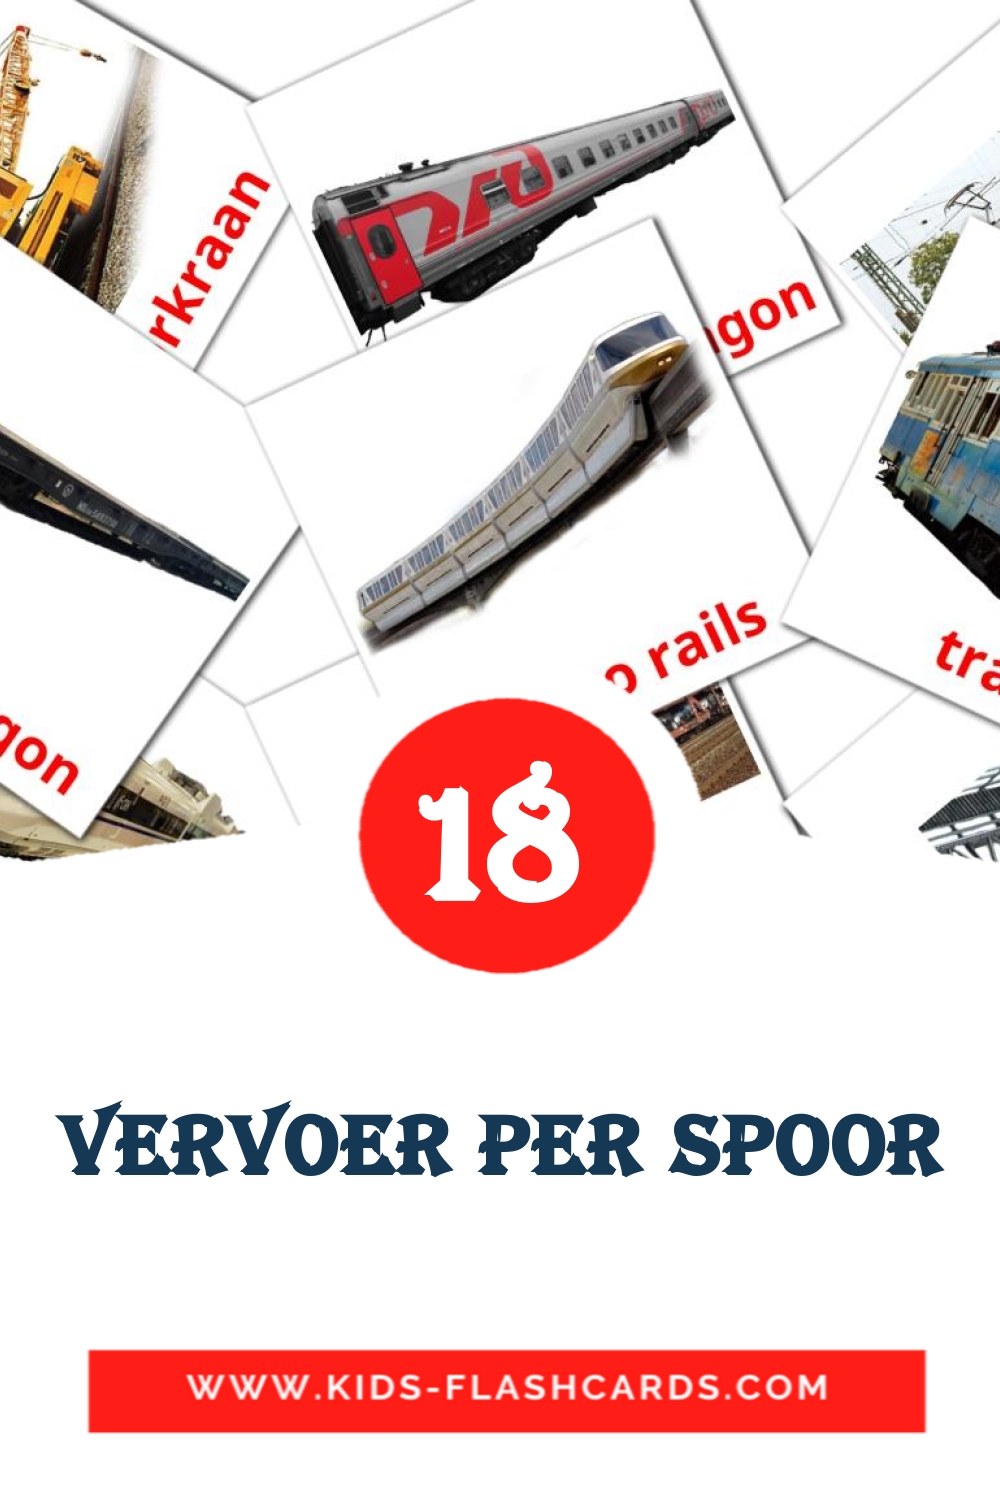 18 carte illustrate di Vervoer per spoor per la scuola materna in olandese